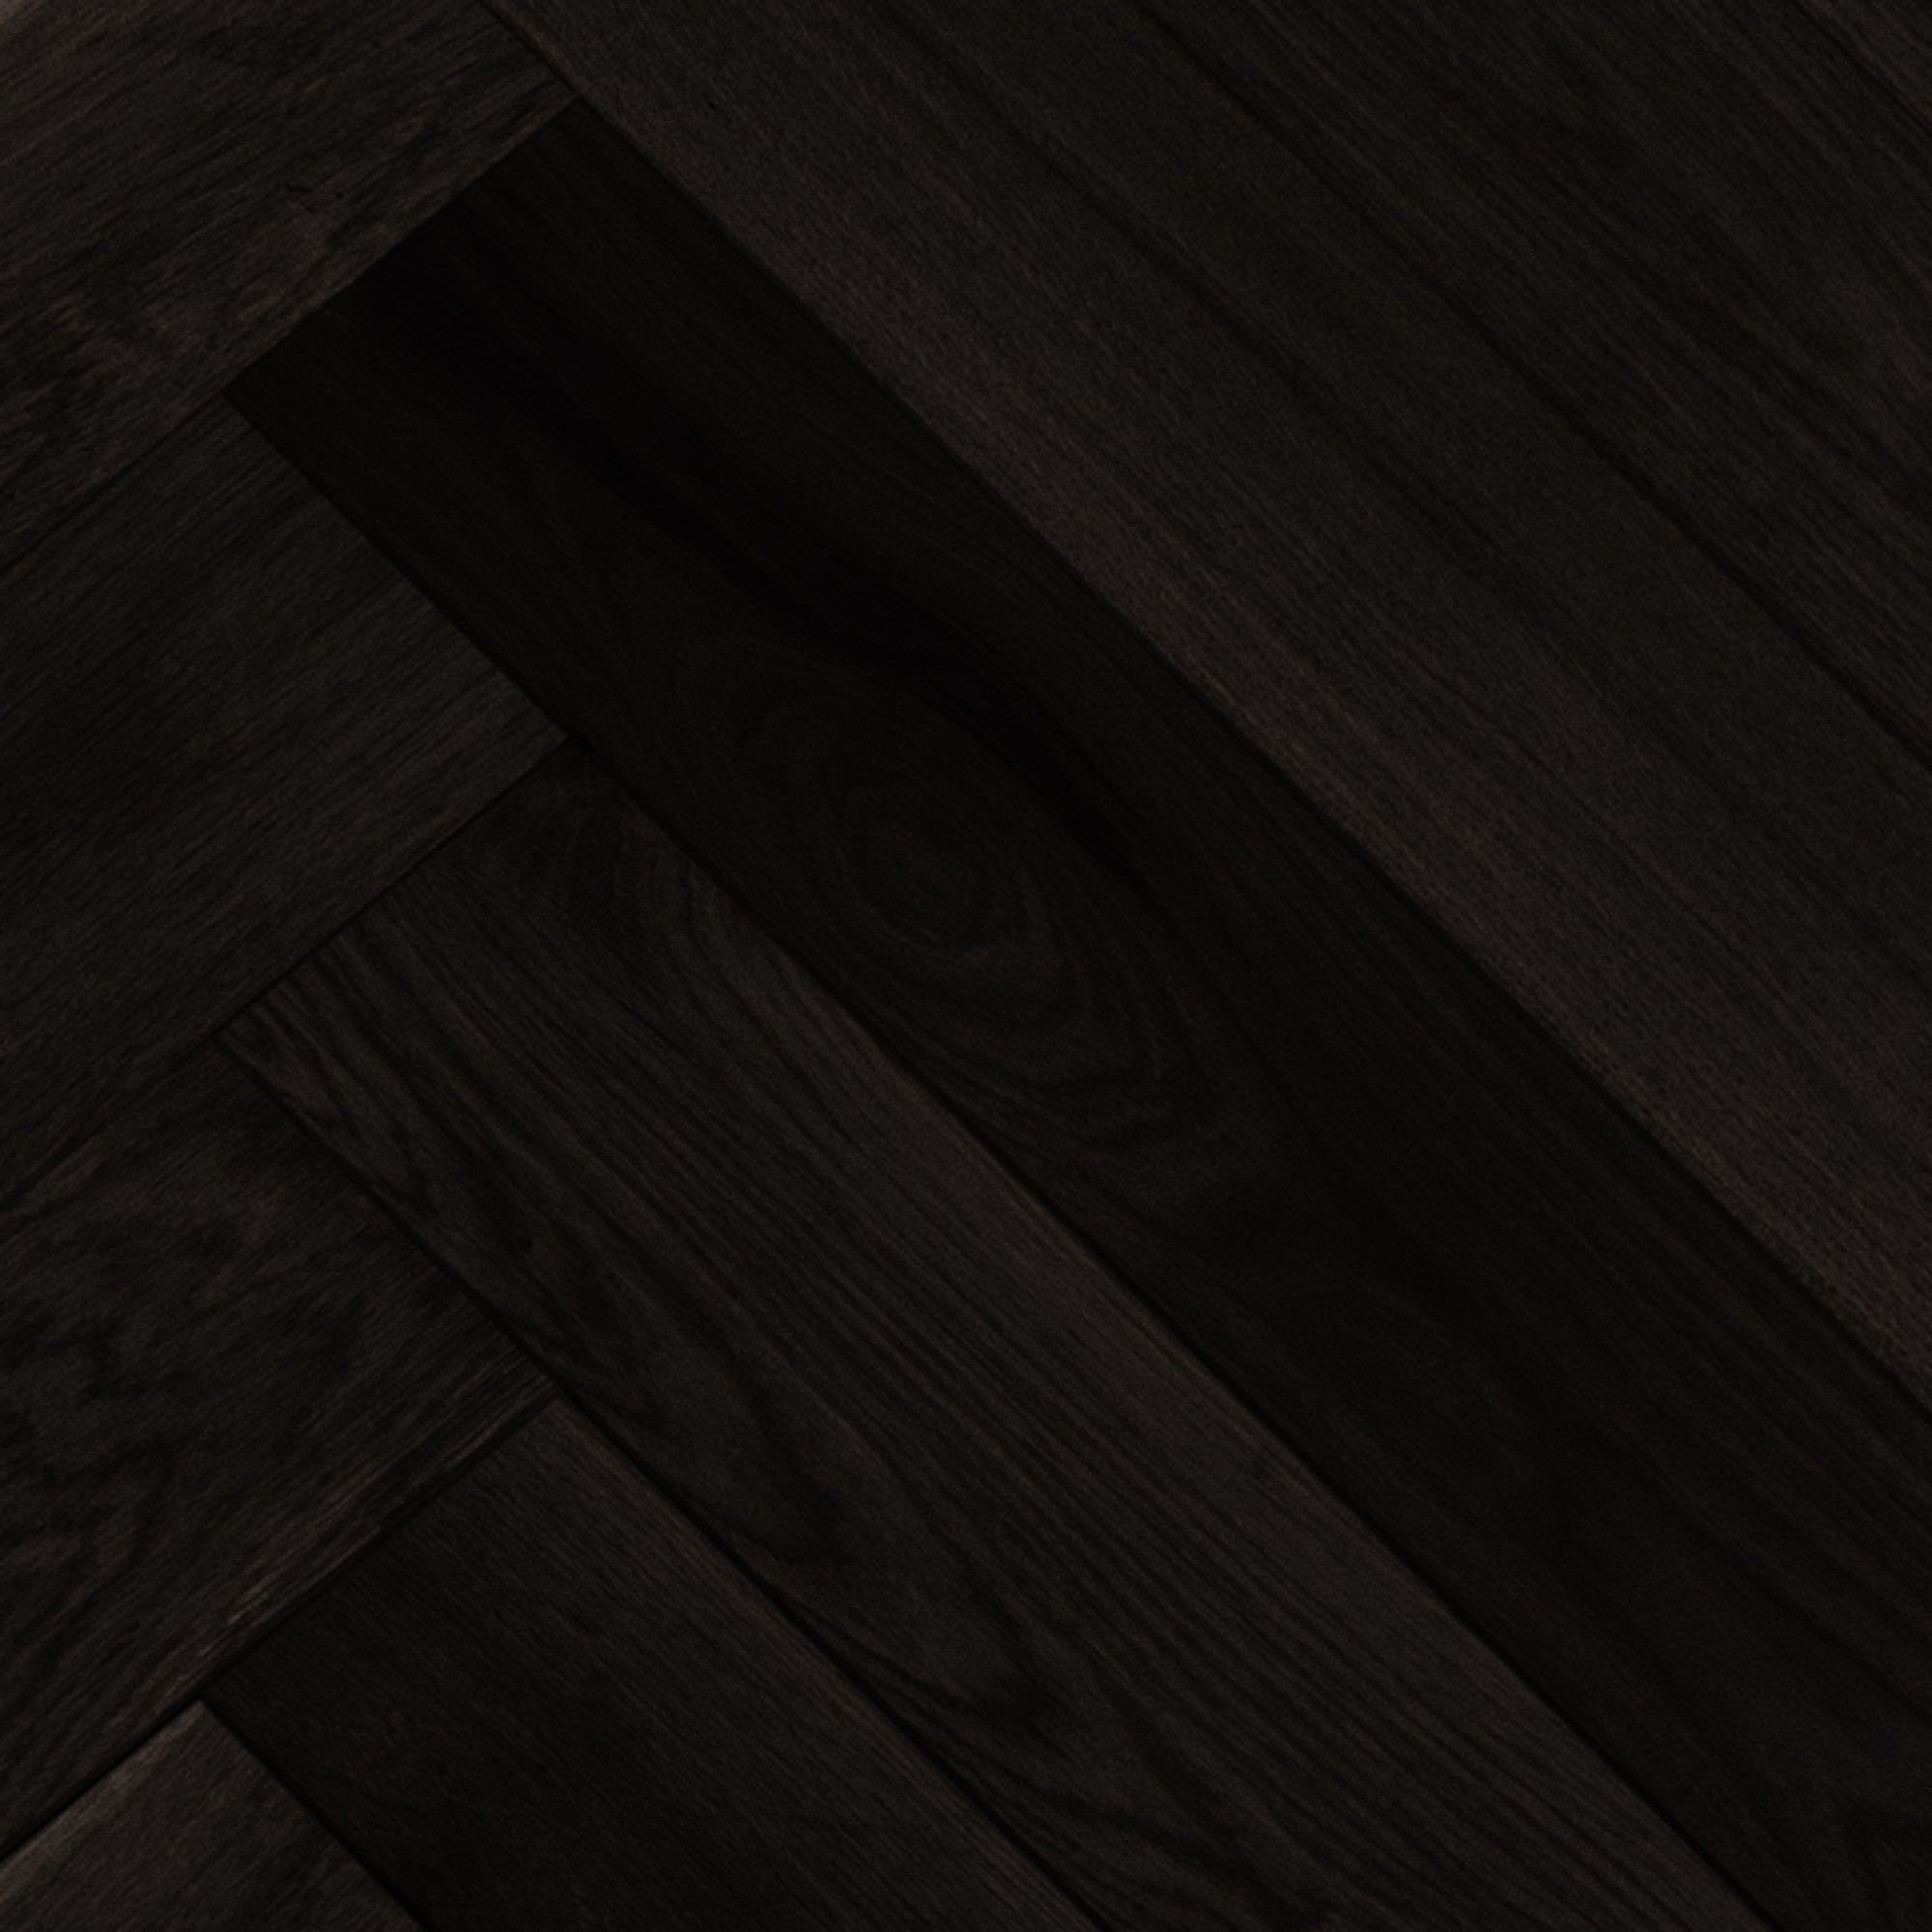 12 Best Repair Kit for Hardwood Floor 2022 free download repair kit for hardwood floor of smooth white oak baroque vintage hardwood flooring and regarding floor ambiance